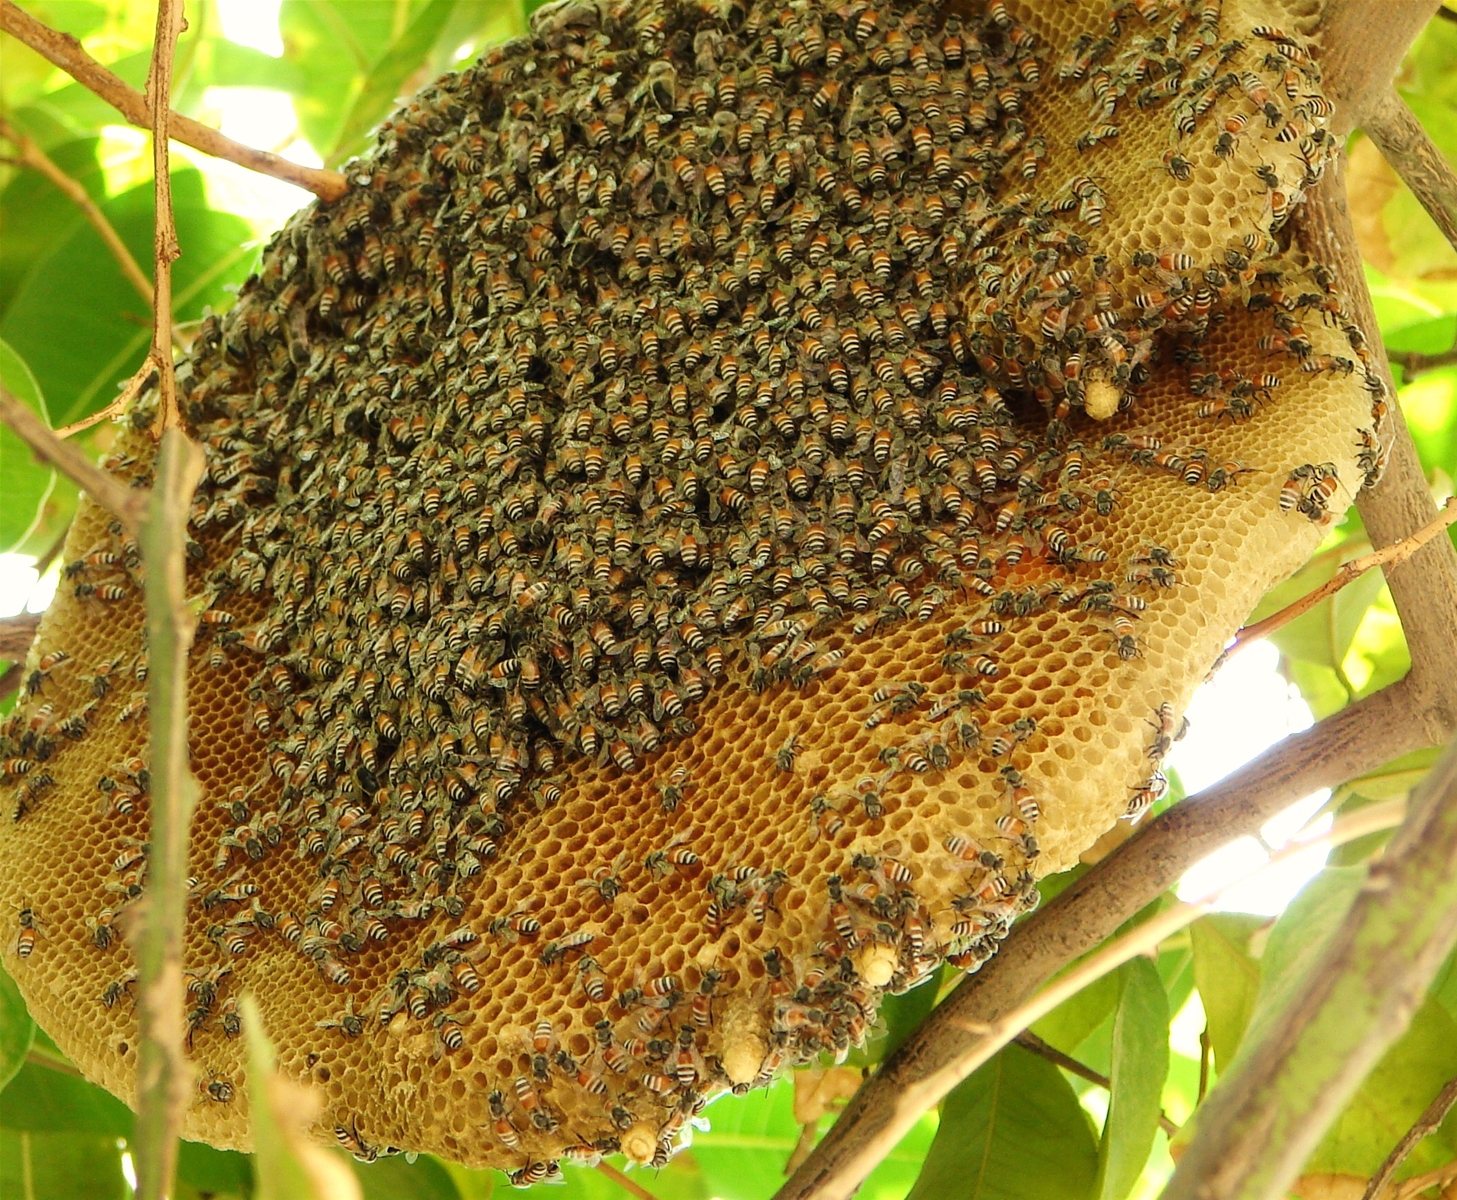 Du lịch Cát Bà - Mật ong rừng Cát Bà - Sản vật quý của du lịch Cát Bà.